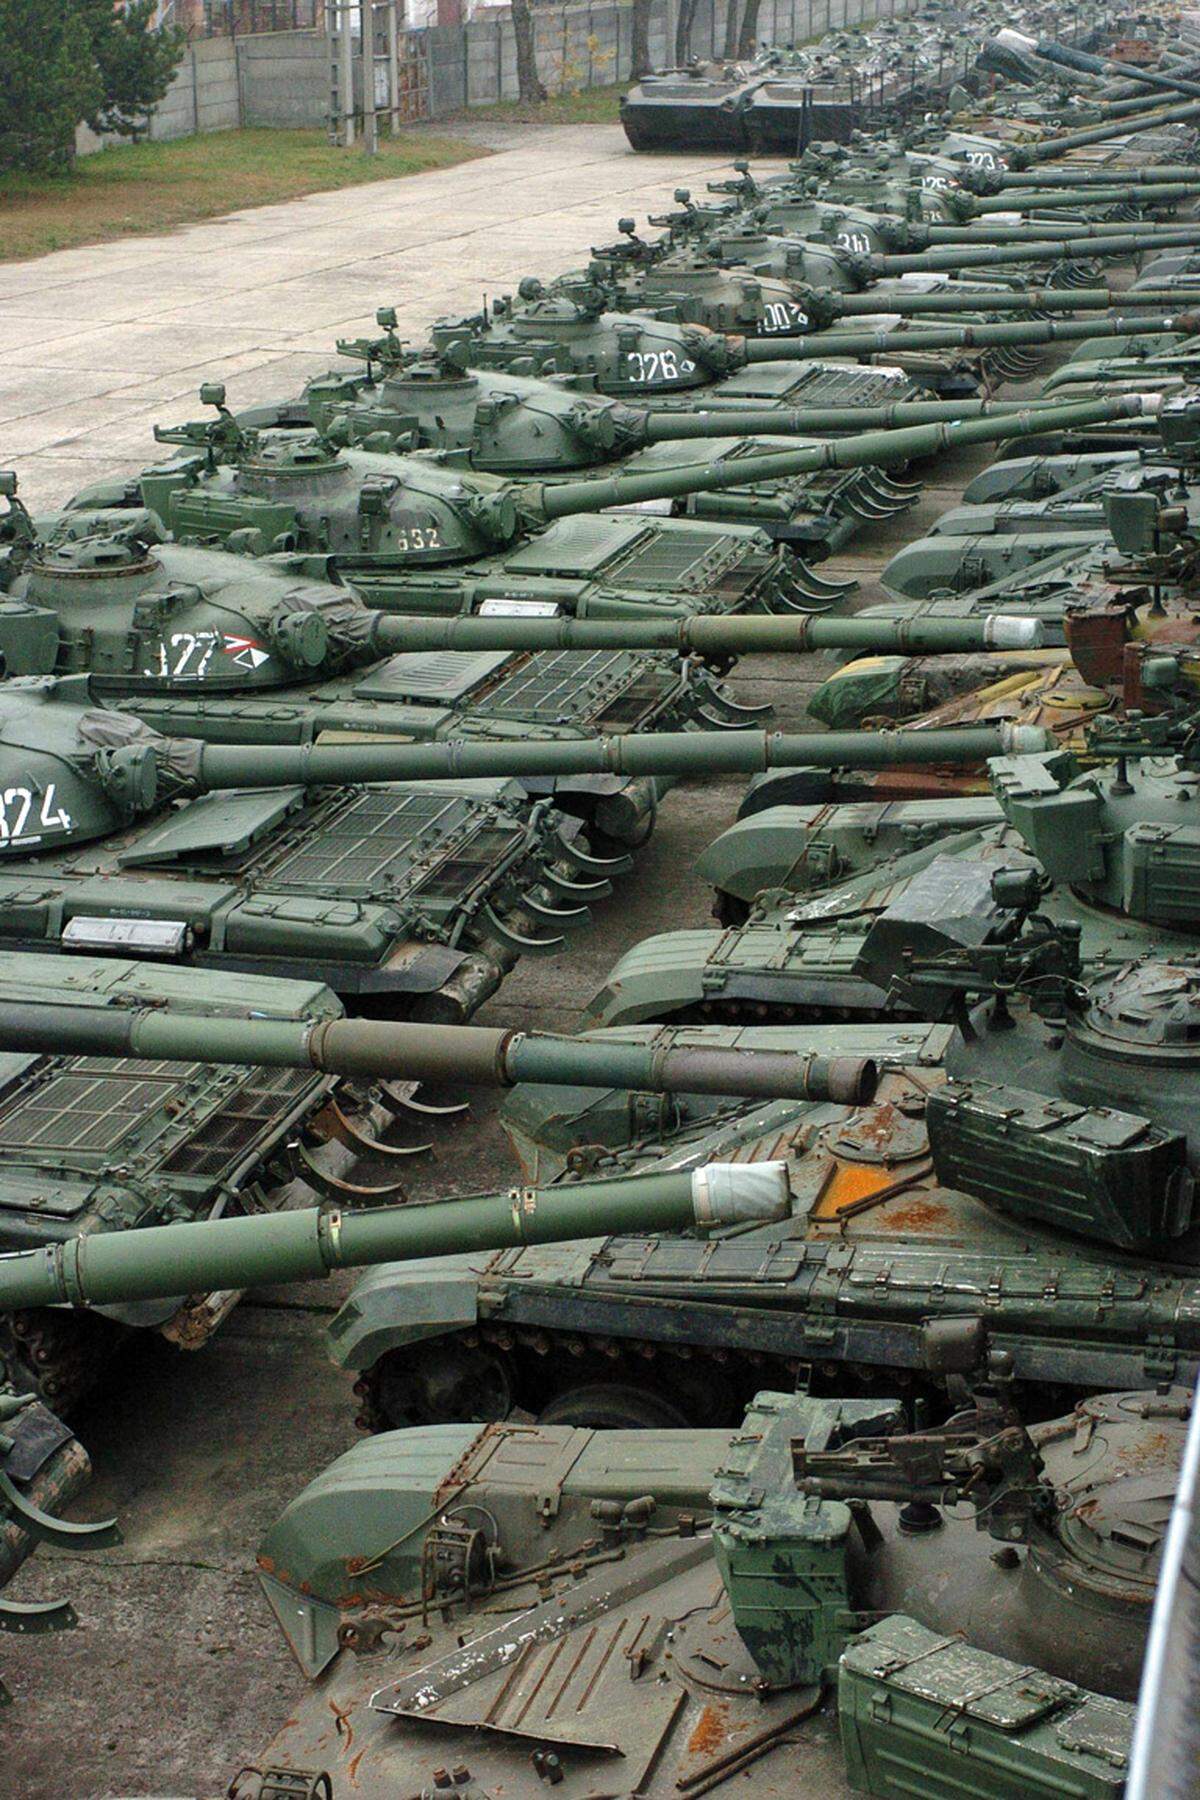 Die wichtigsten Waffensysteme sind in Syrien rund 4700 Kampfpanzer, die modernsten darunter sind 1400 des Typs T-72. Viele Panzer sind allerdings nicht mehr fahrfähig, sondern fest in Kampfstellungen eingebaut. Die türkischen Truppen verfügen dagegen über neueres Kriegsmaterial. Sie sind ausgerüstet mit Kampfpanzern der Typen M-48, dem alten M-60, dem neueren Sabra, Leopard 1 und dem Leopard 2.